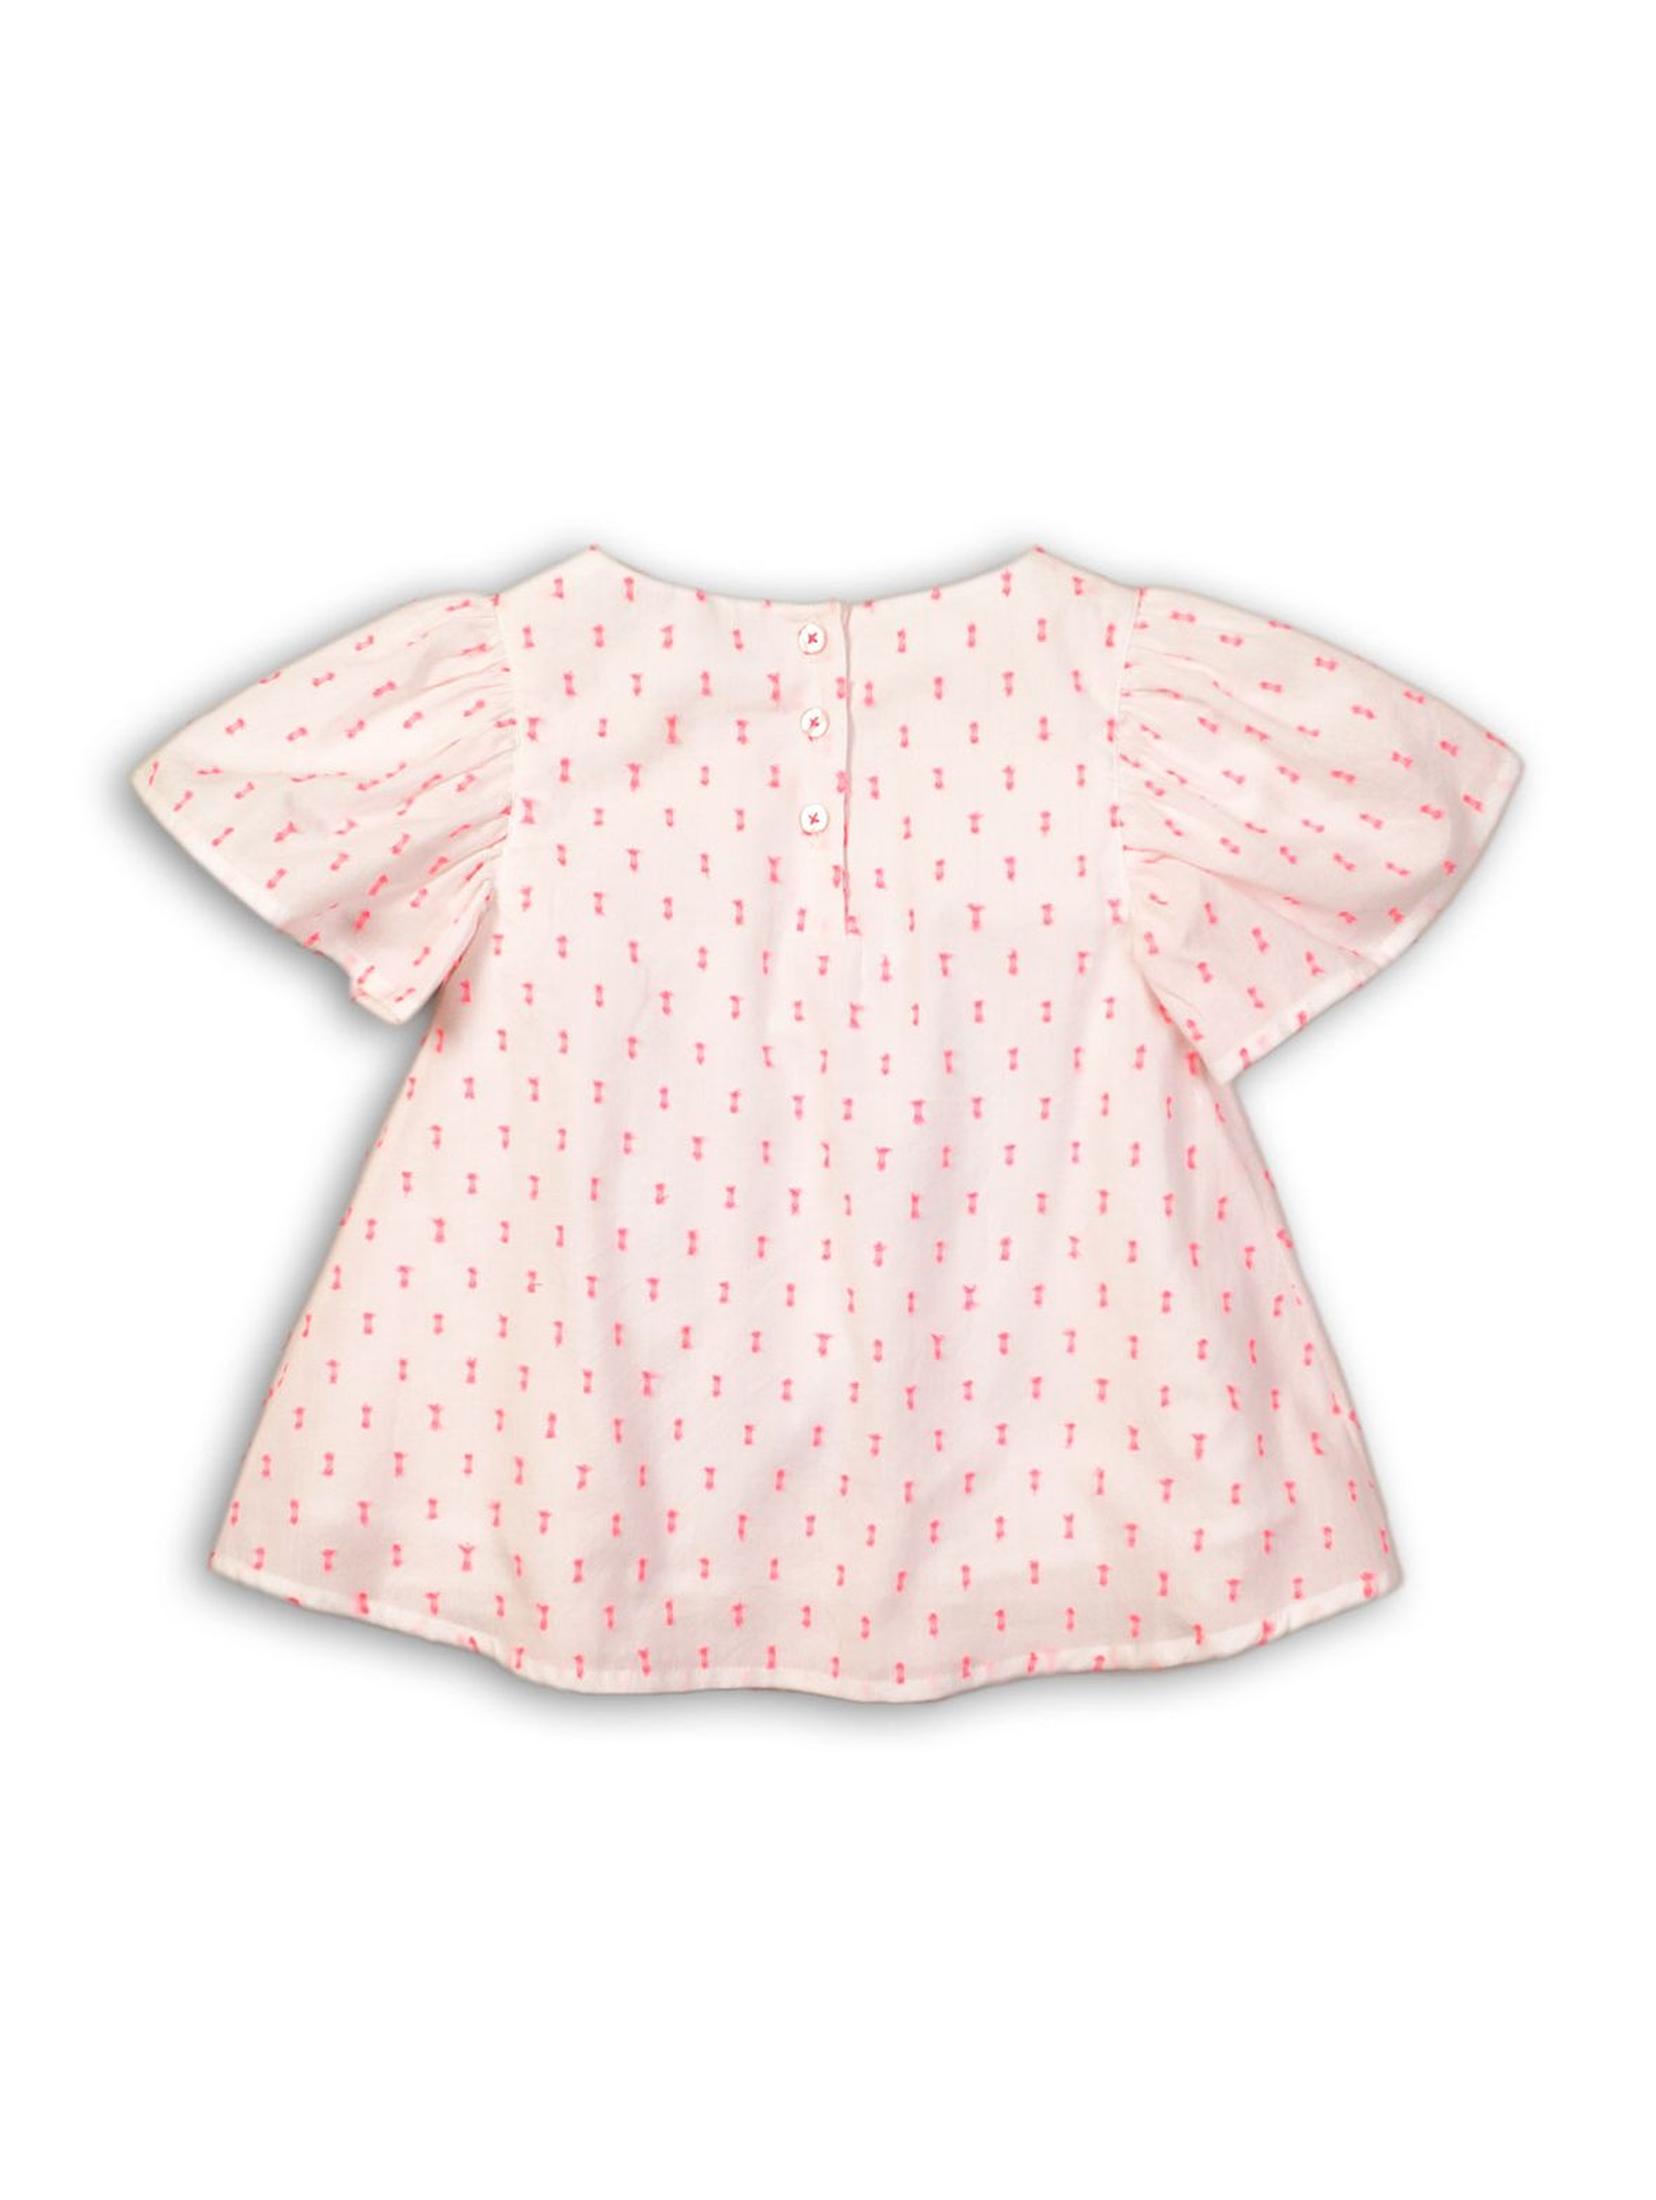 Biało-różowa bluzka dziewczęca